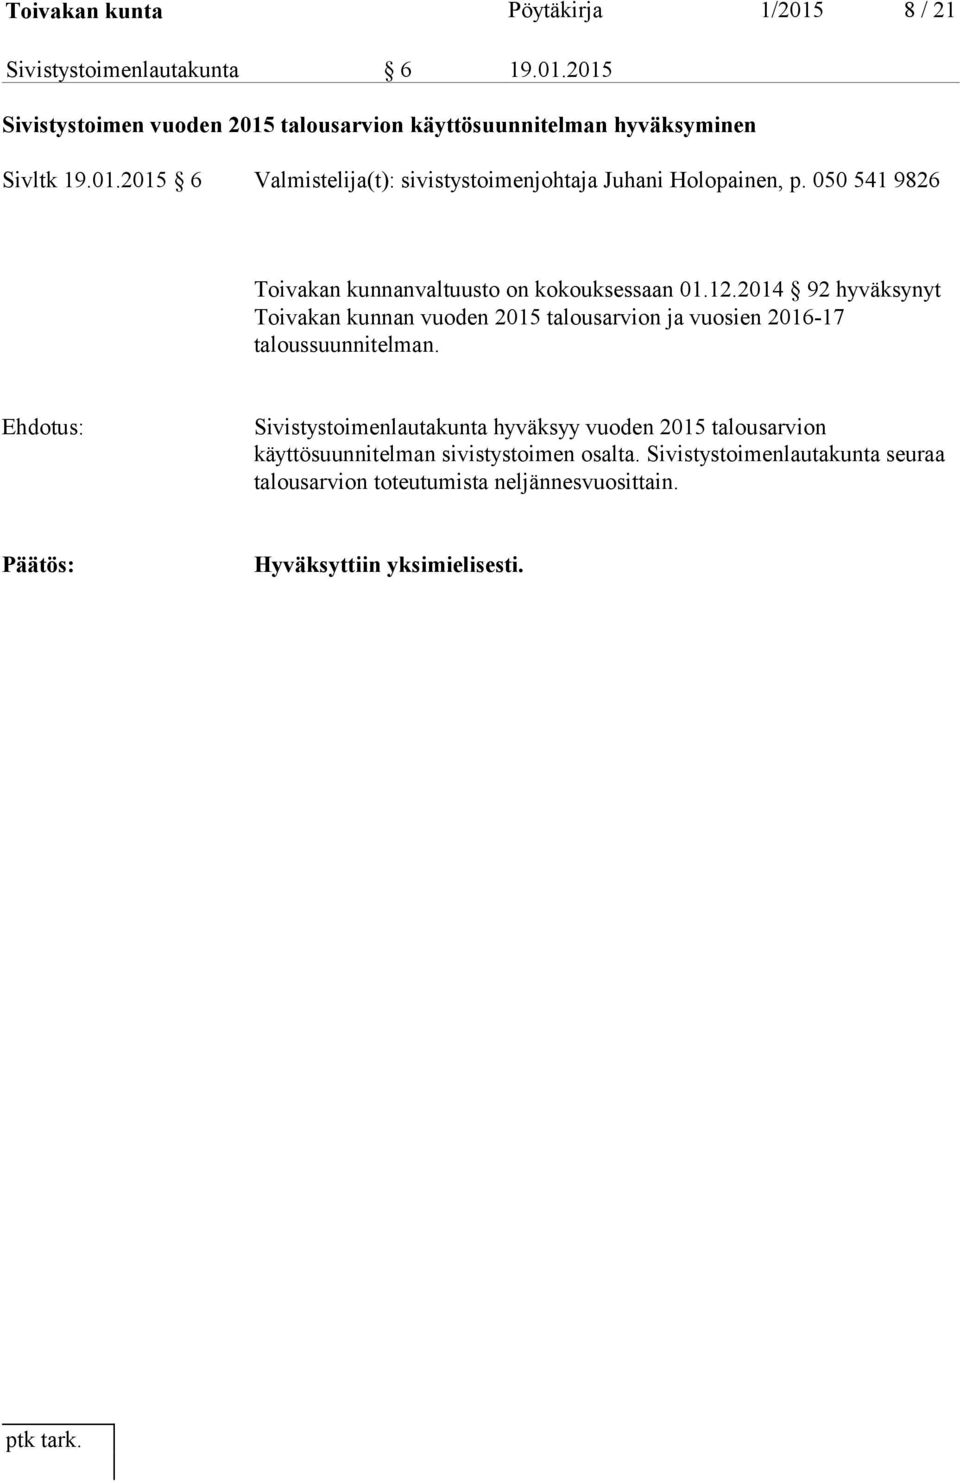 2014 92 hyväksynyt Toivakan kunnan vuoden 2015 talousarvion ja vuosien 2016-17 taloussuunnitelman.